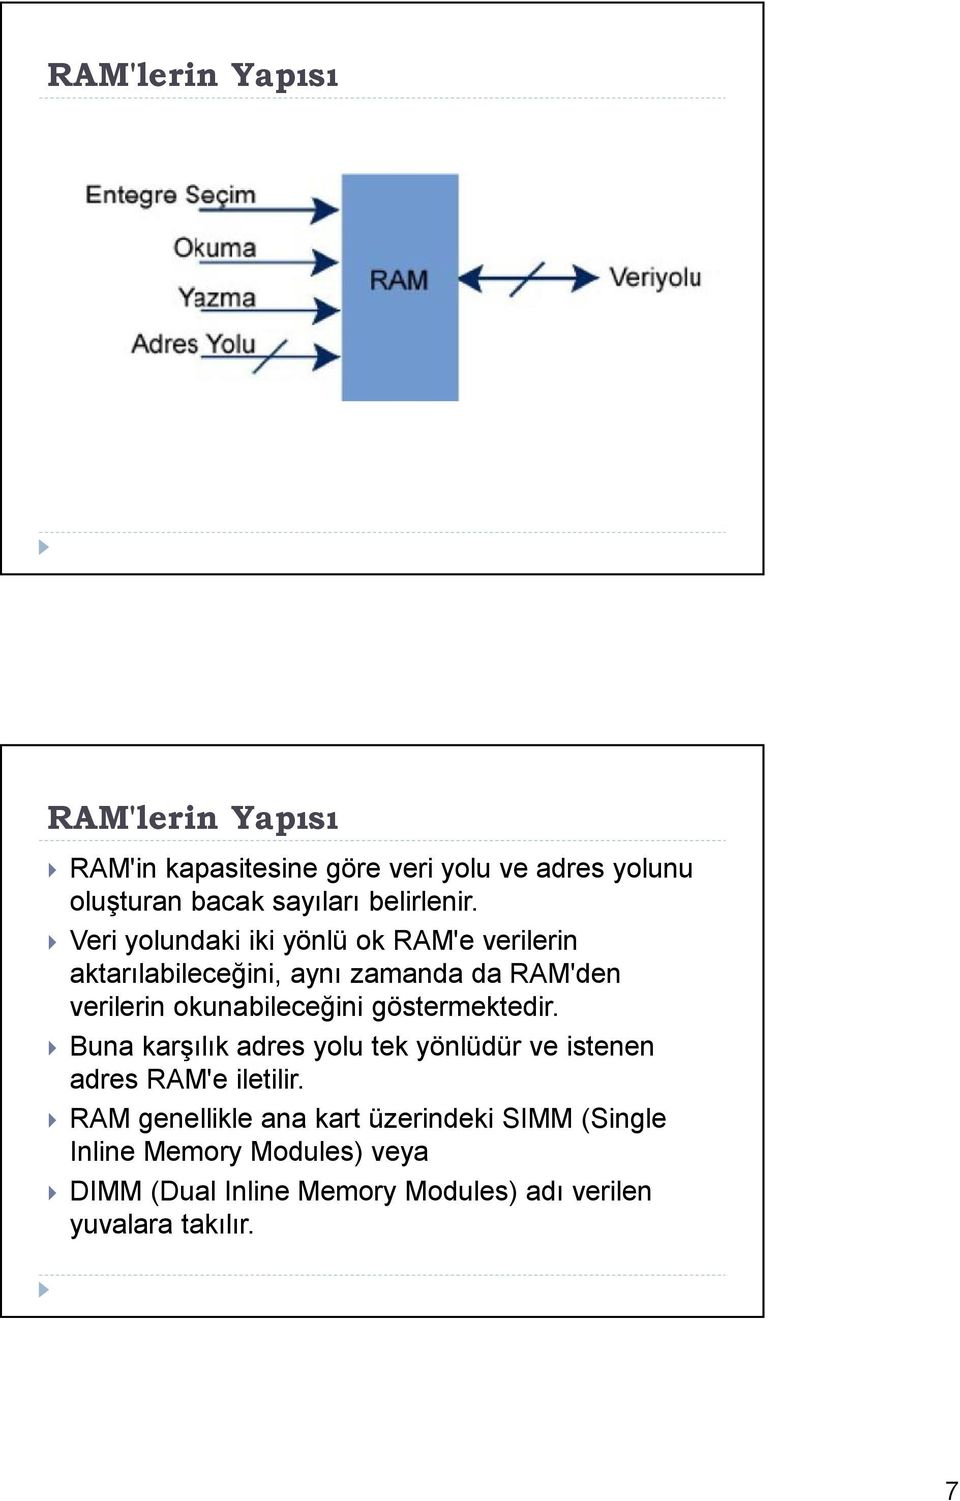 Veri yolundaki iki yönlü ok RAM'e verilerin aktarılabileceğini, aynı zamanda da RAM'den verilerin okunabileceğini